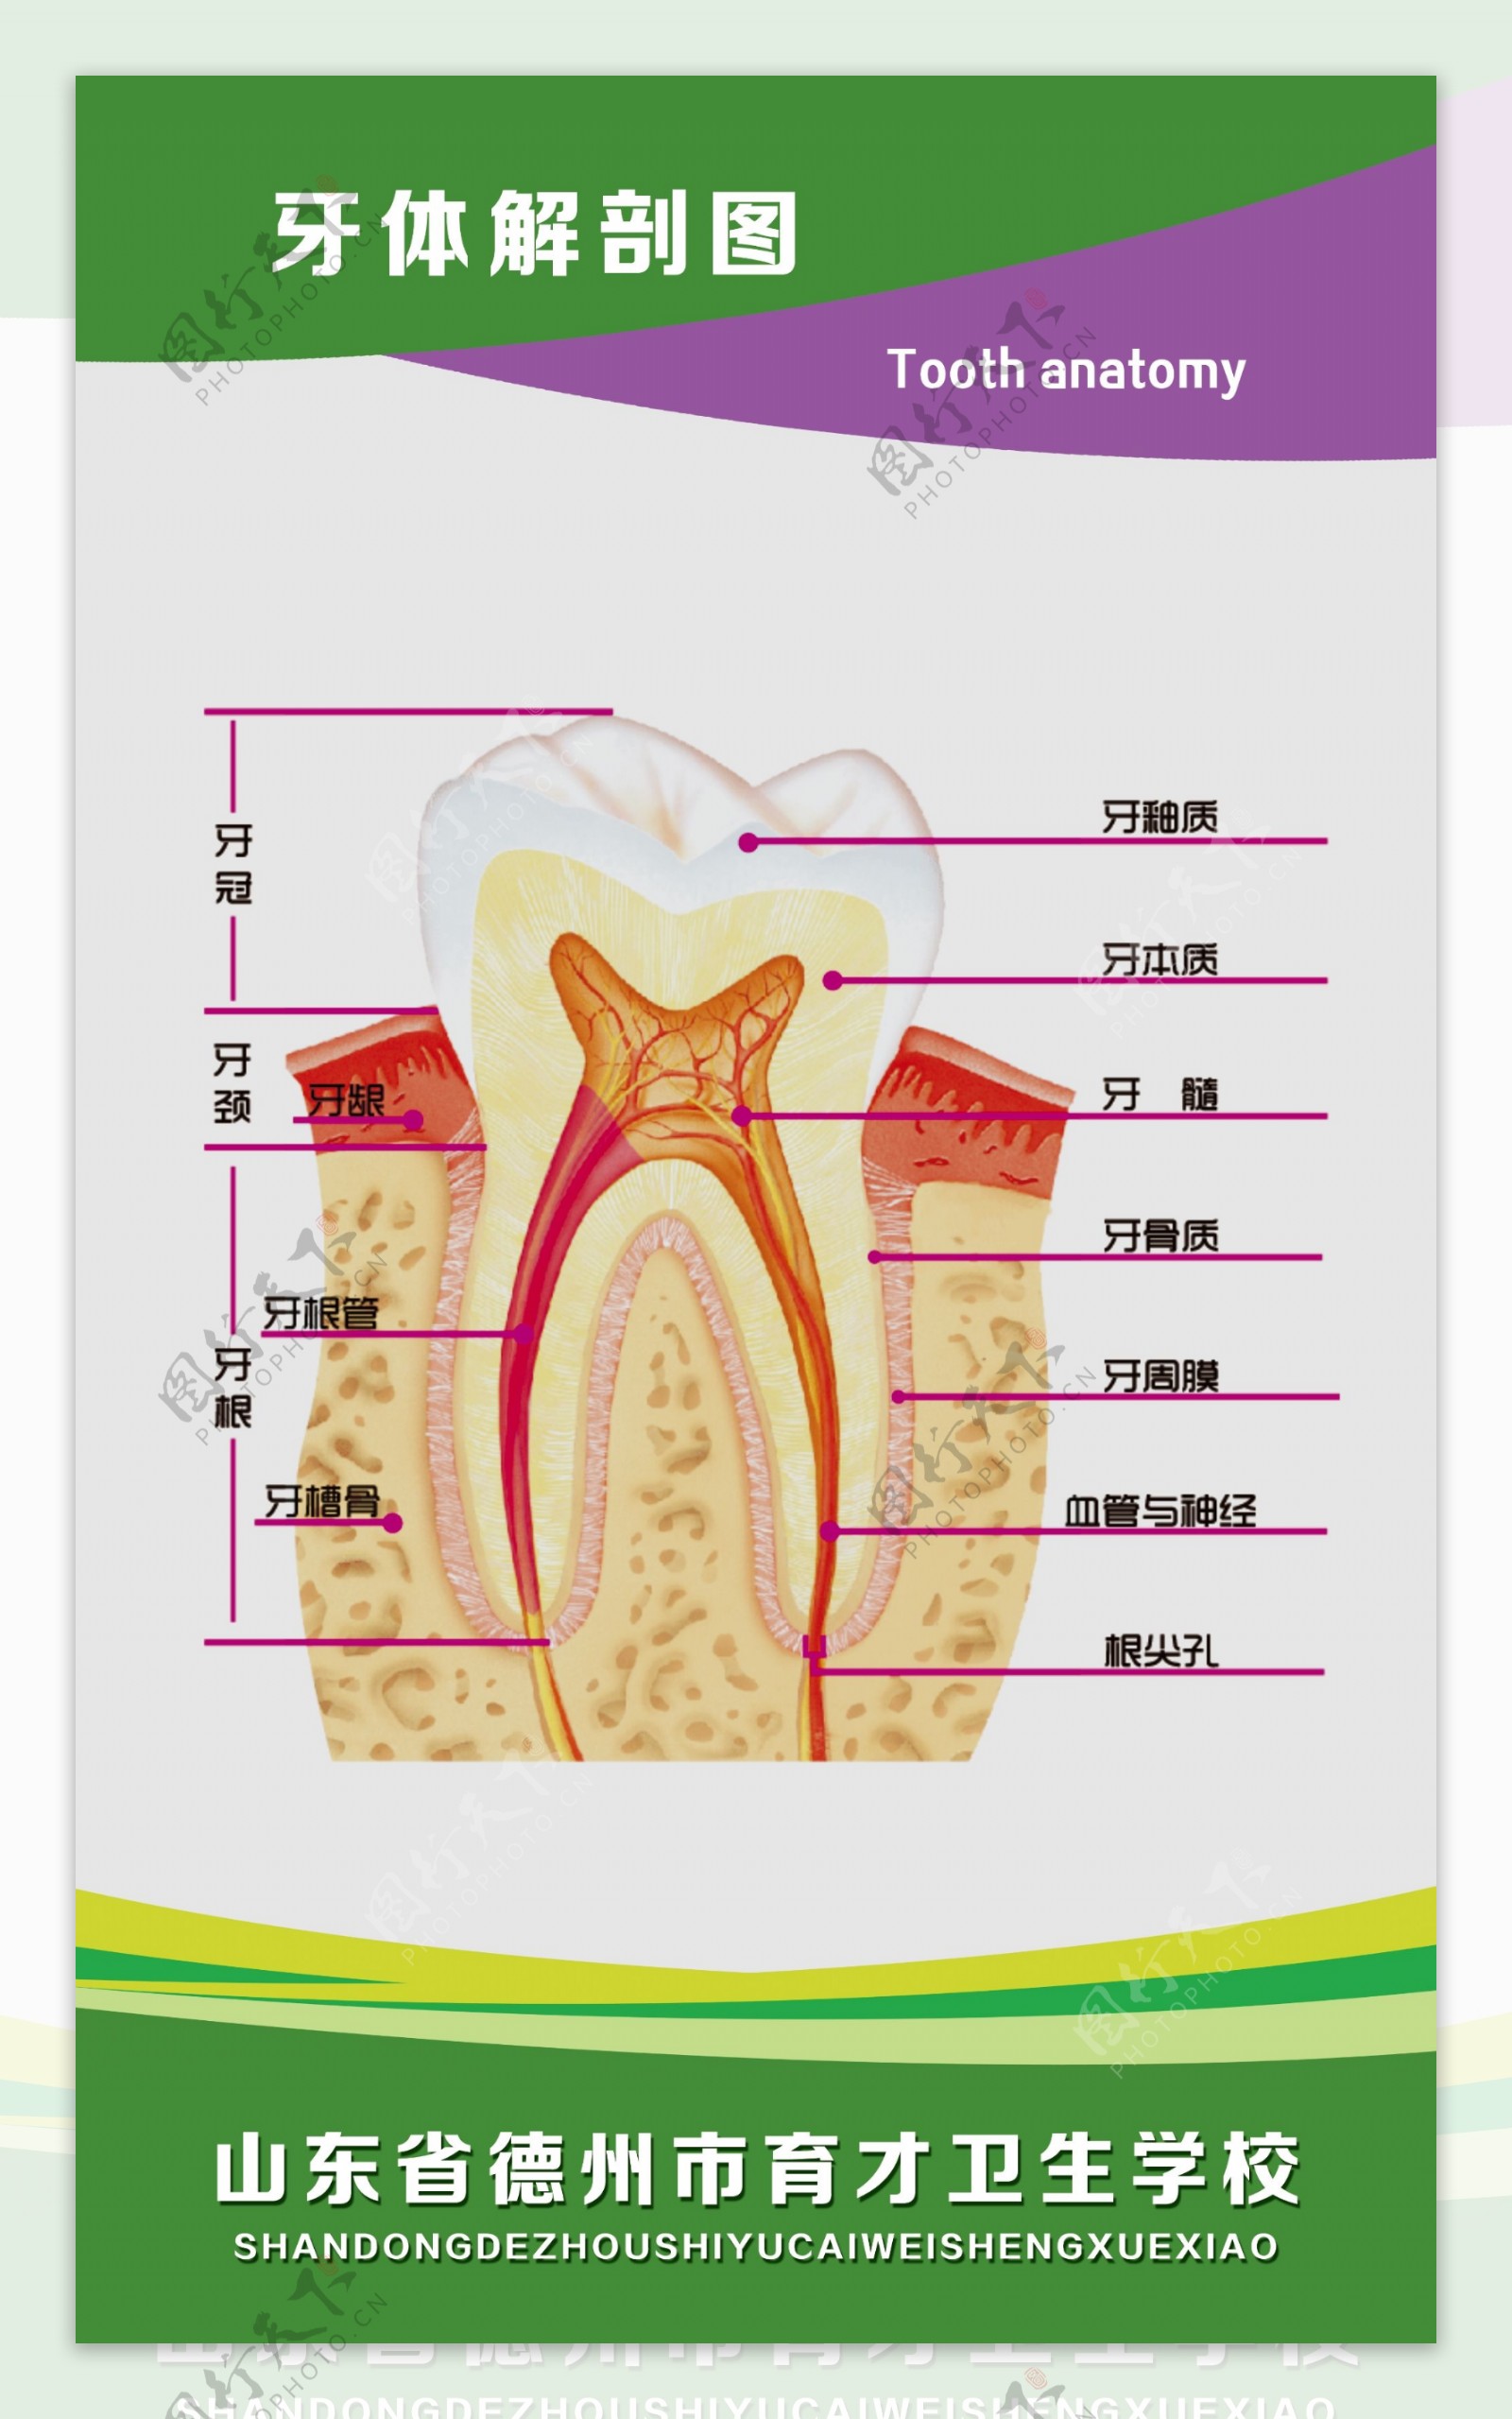 牙体解剖图